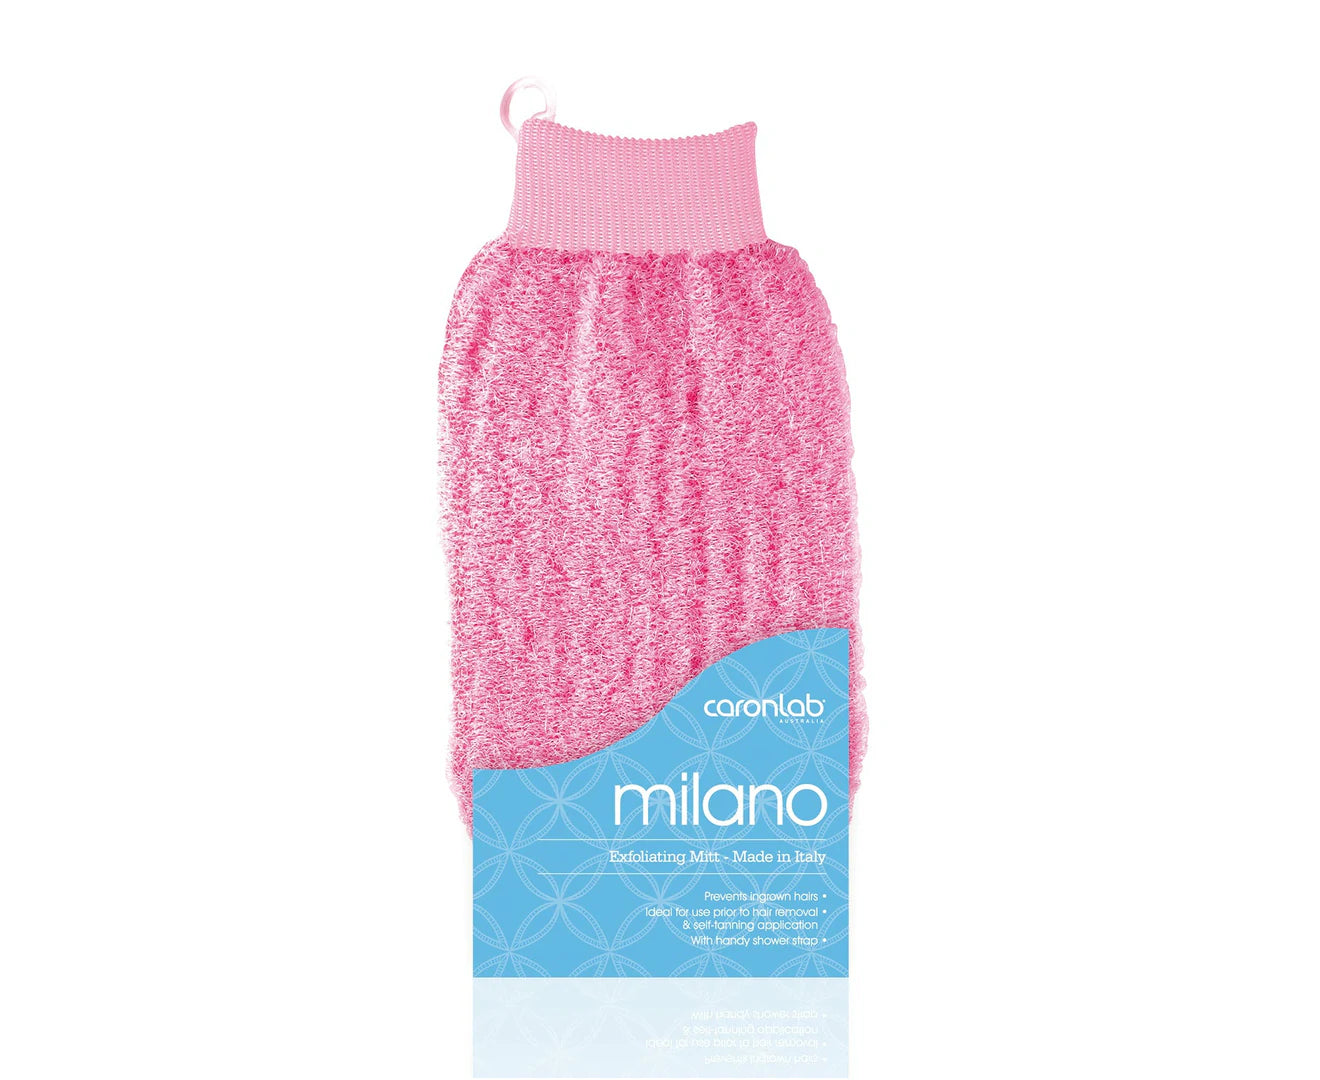 Milano Body Exfoliating Massage Glove Mitt Pink